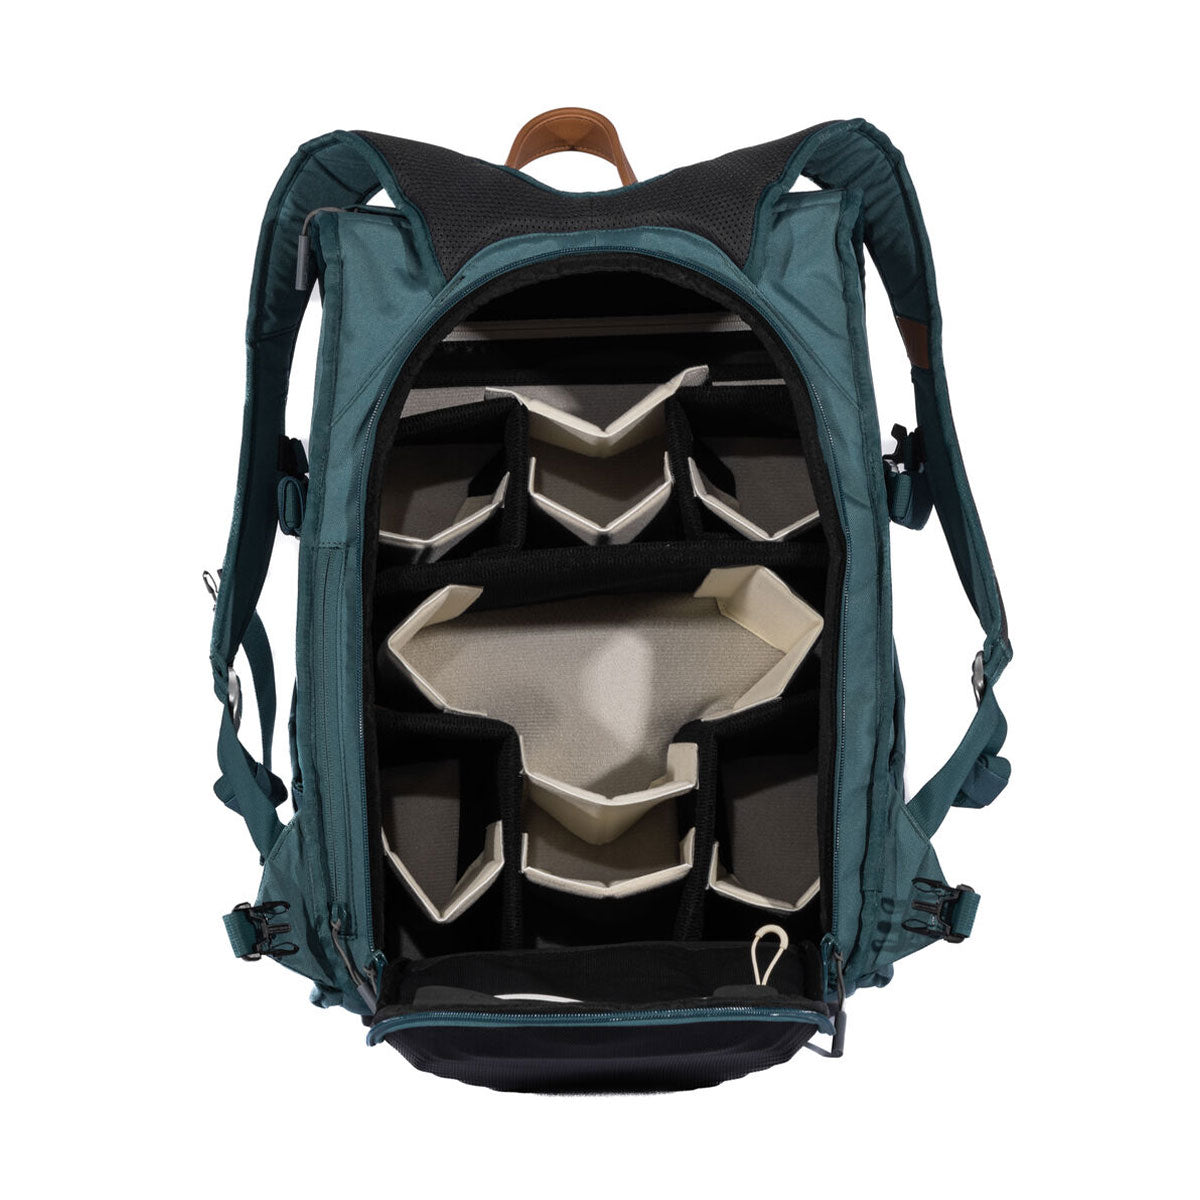 Holdland Original Backpack (Canopy Green, 28L)